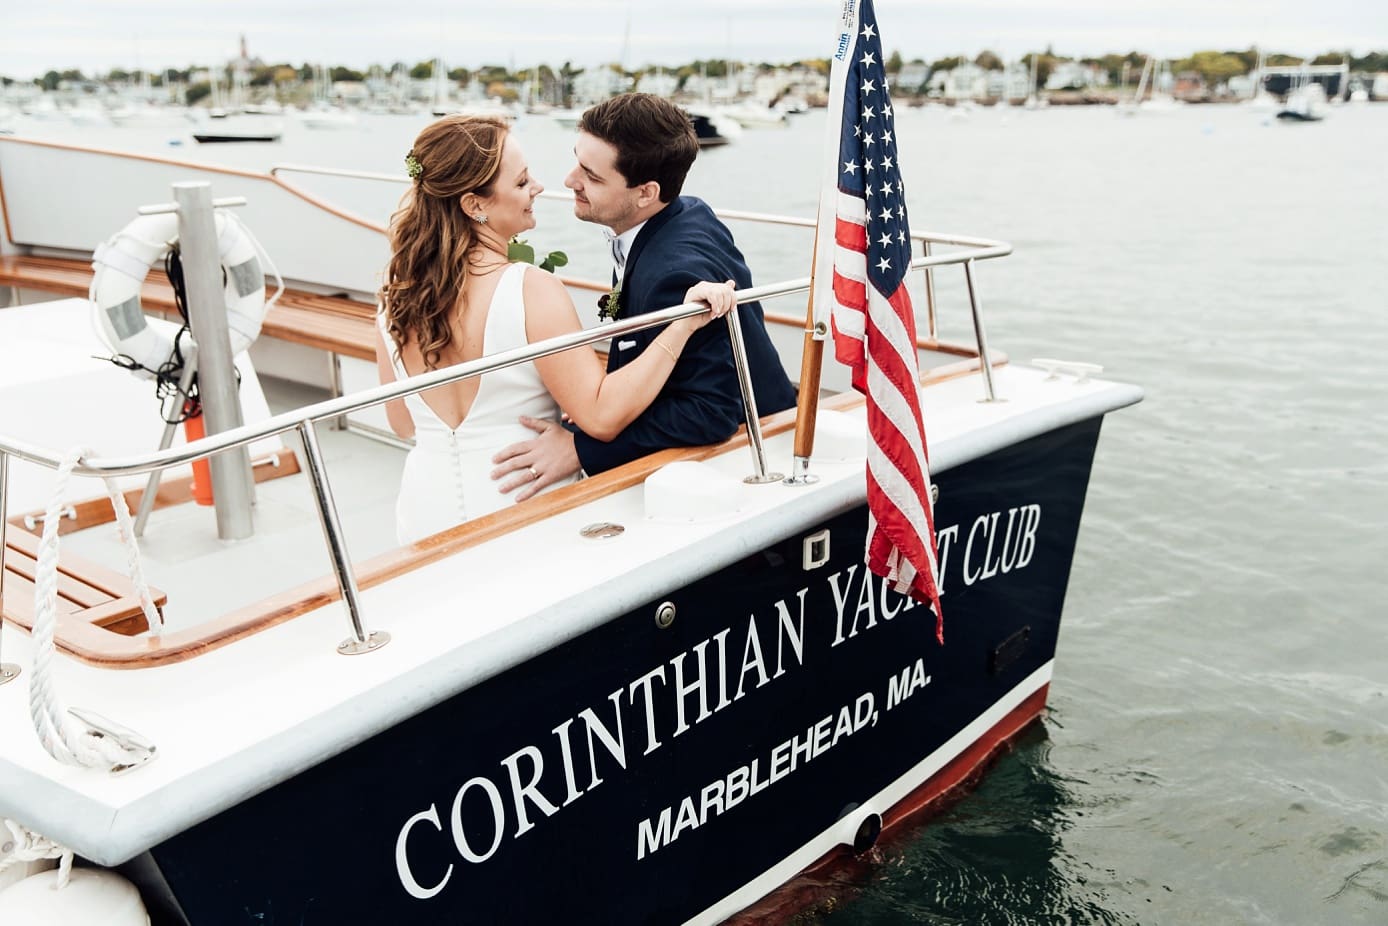 corinthia-yacht-club-marblehead-ma-wedding-photography-by-samantha-melanson